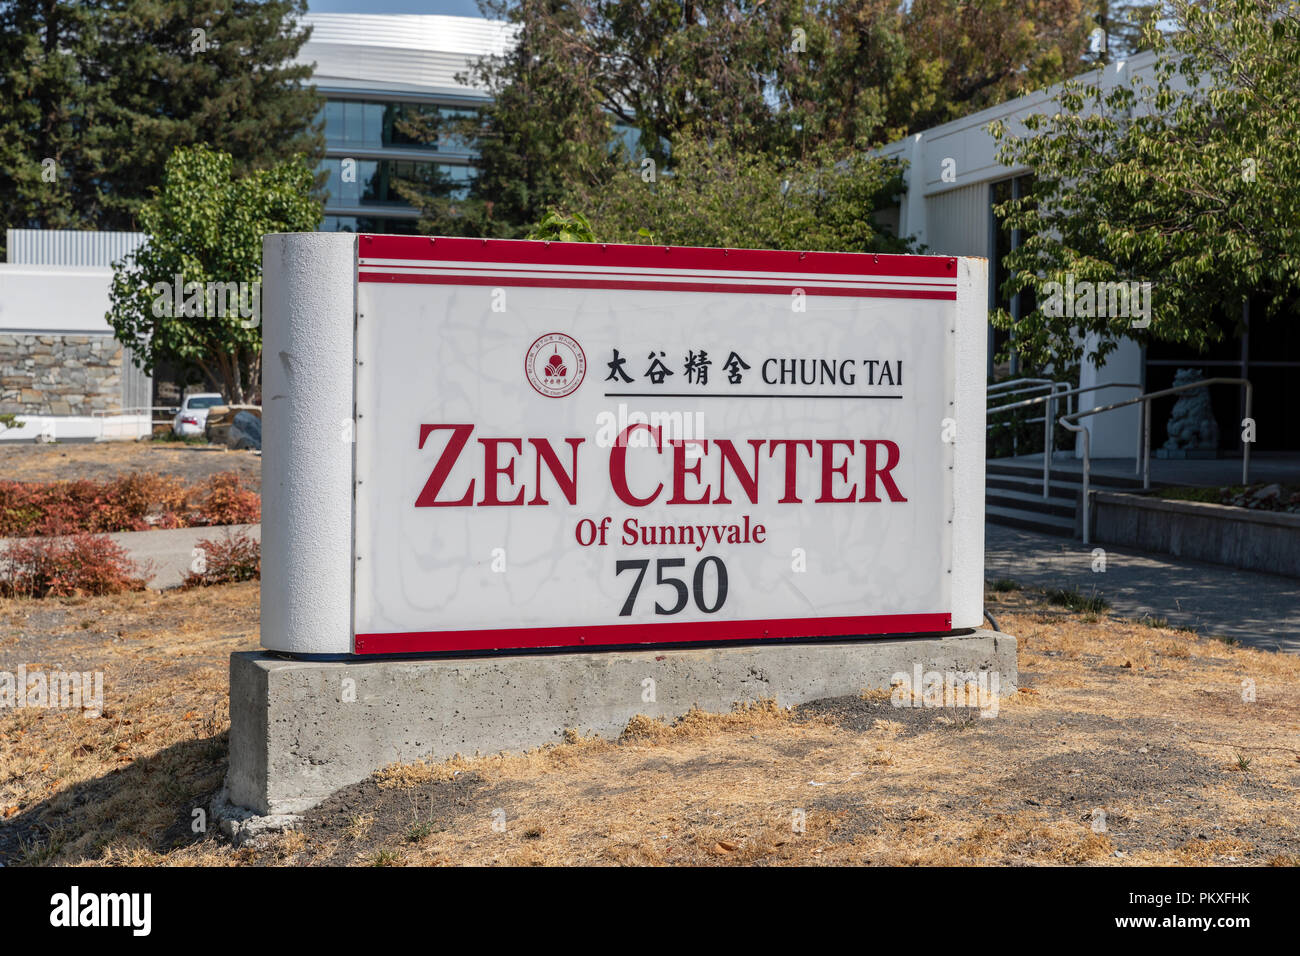 Tai Chung centro Zen di Sunnyvale, firmare fuori dall'edificio; Sunnyvale, California, Stati Uniti d'America Foto Stock